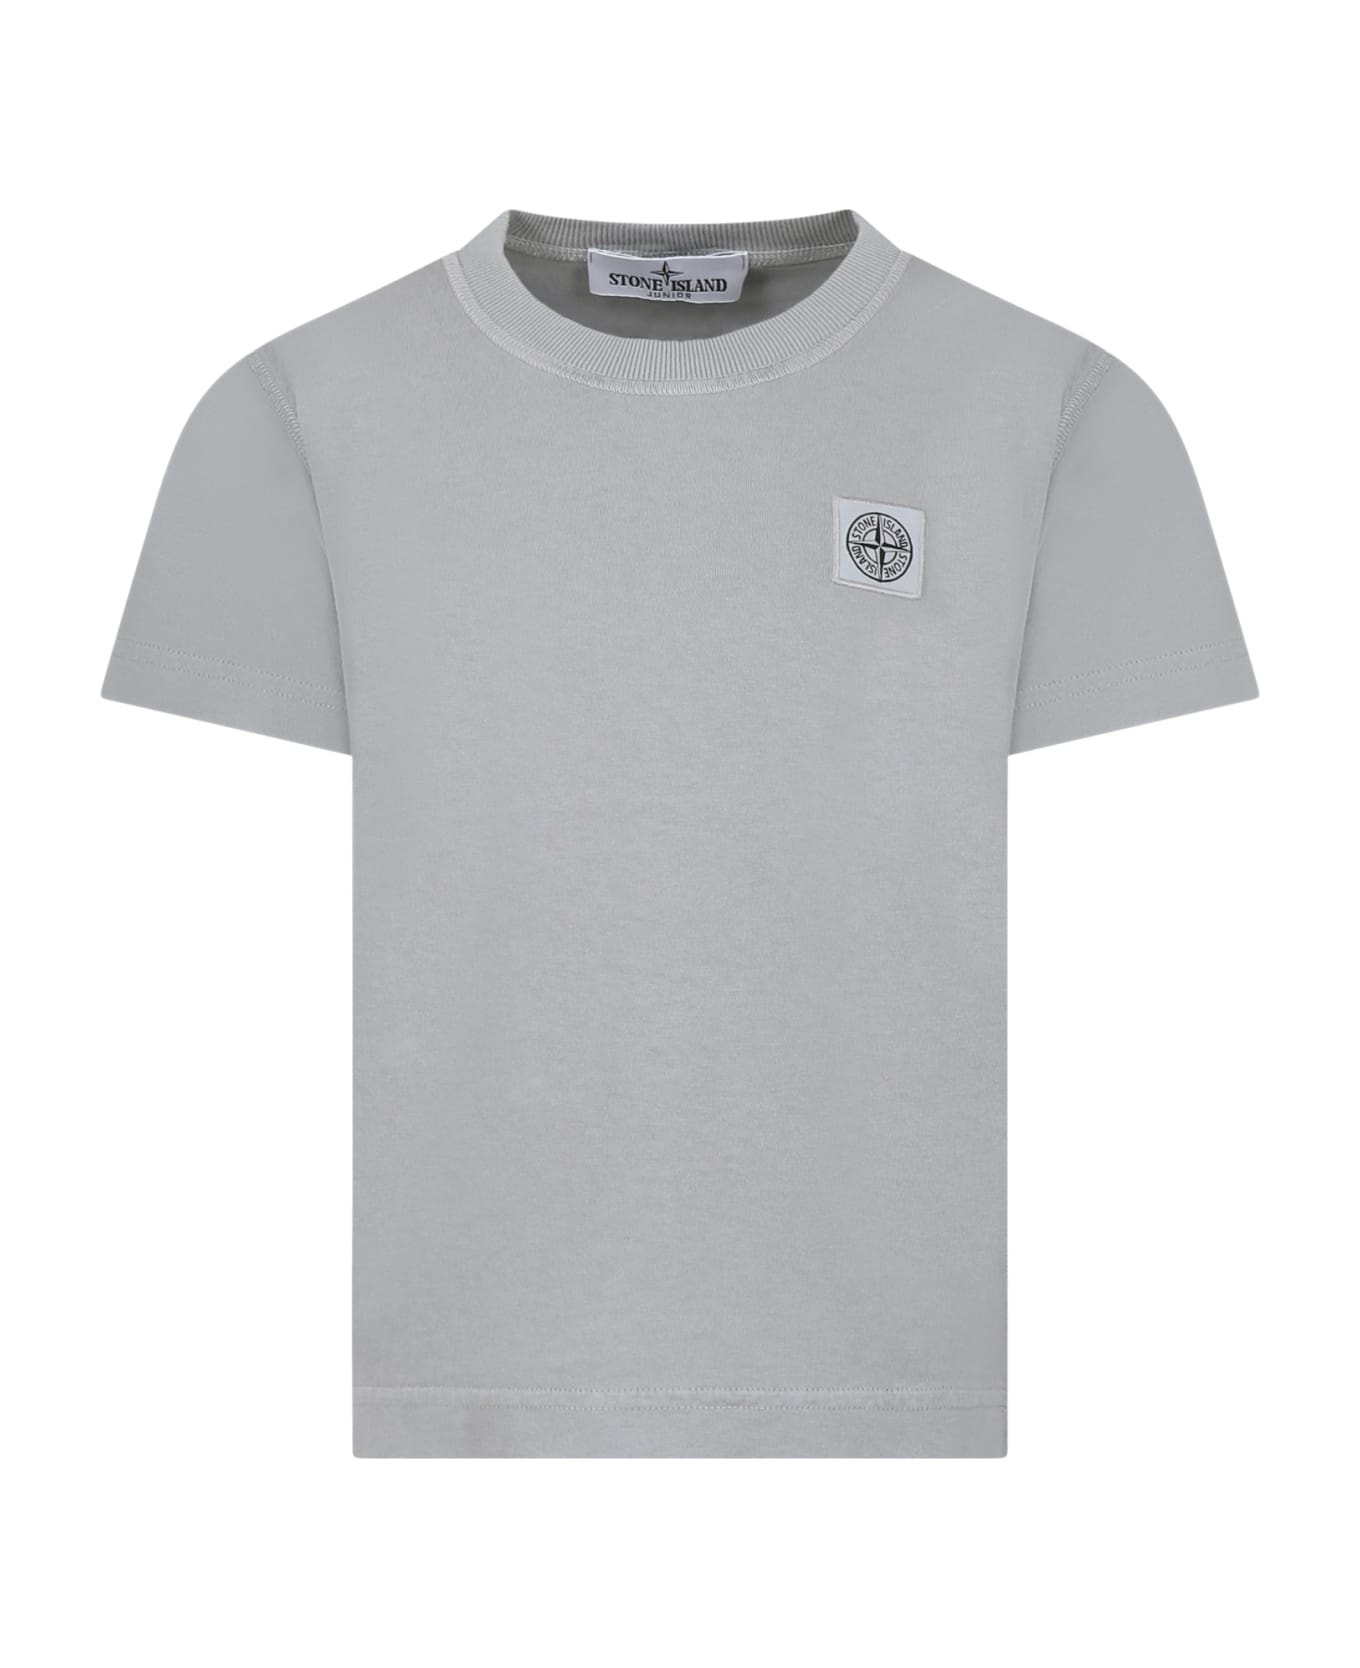 Stone Island Junior Grey T-shirt For Boy With Logo - Grey